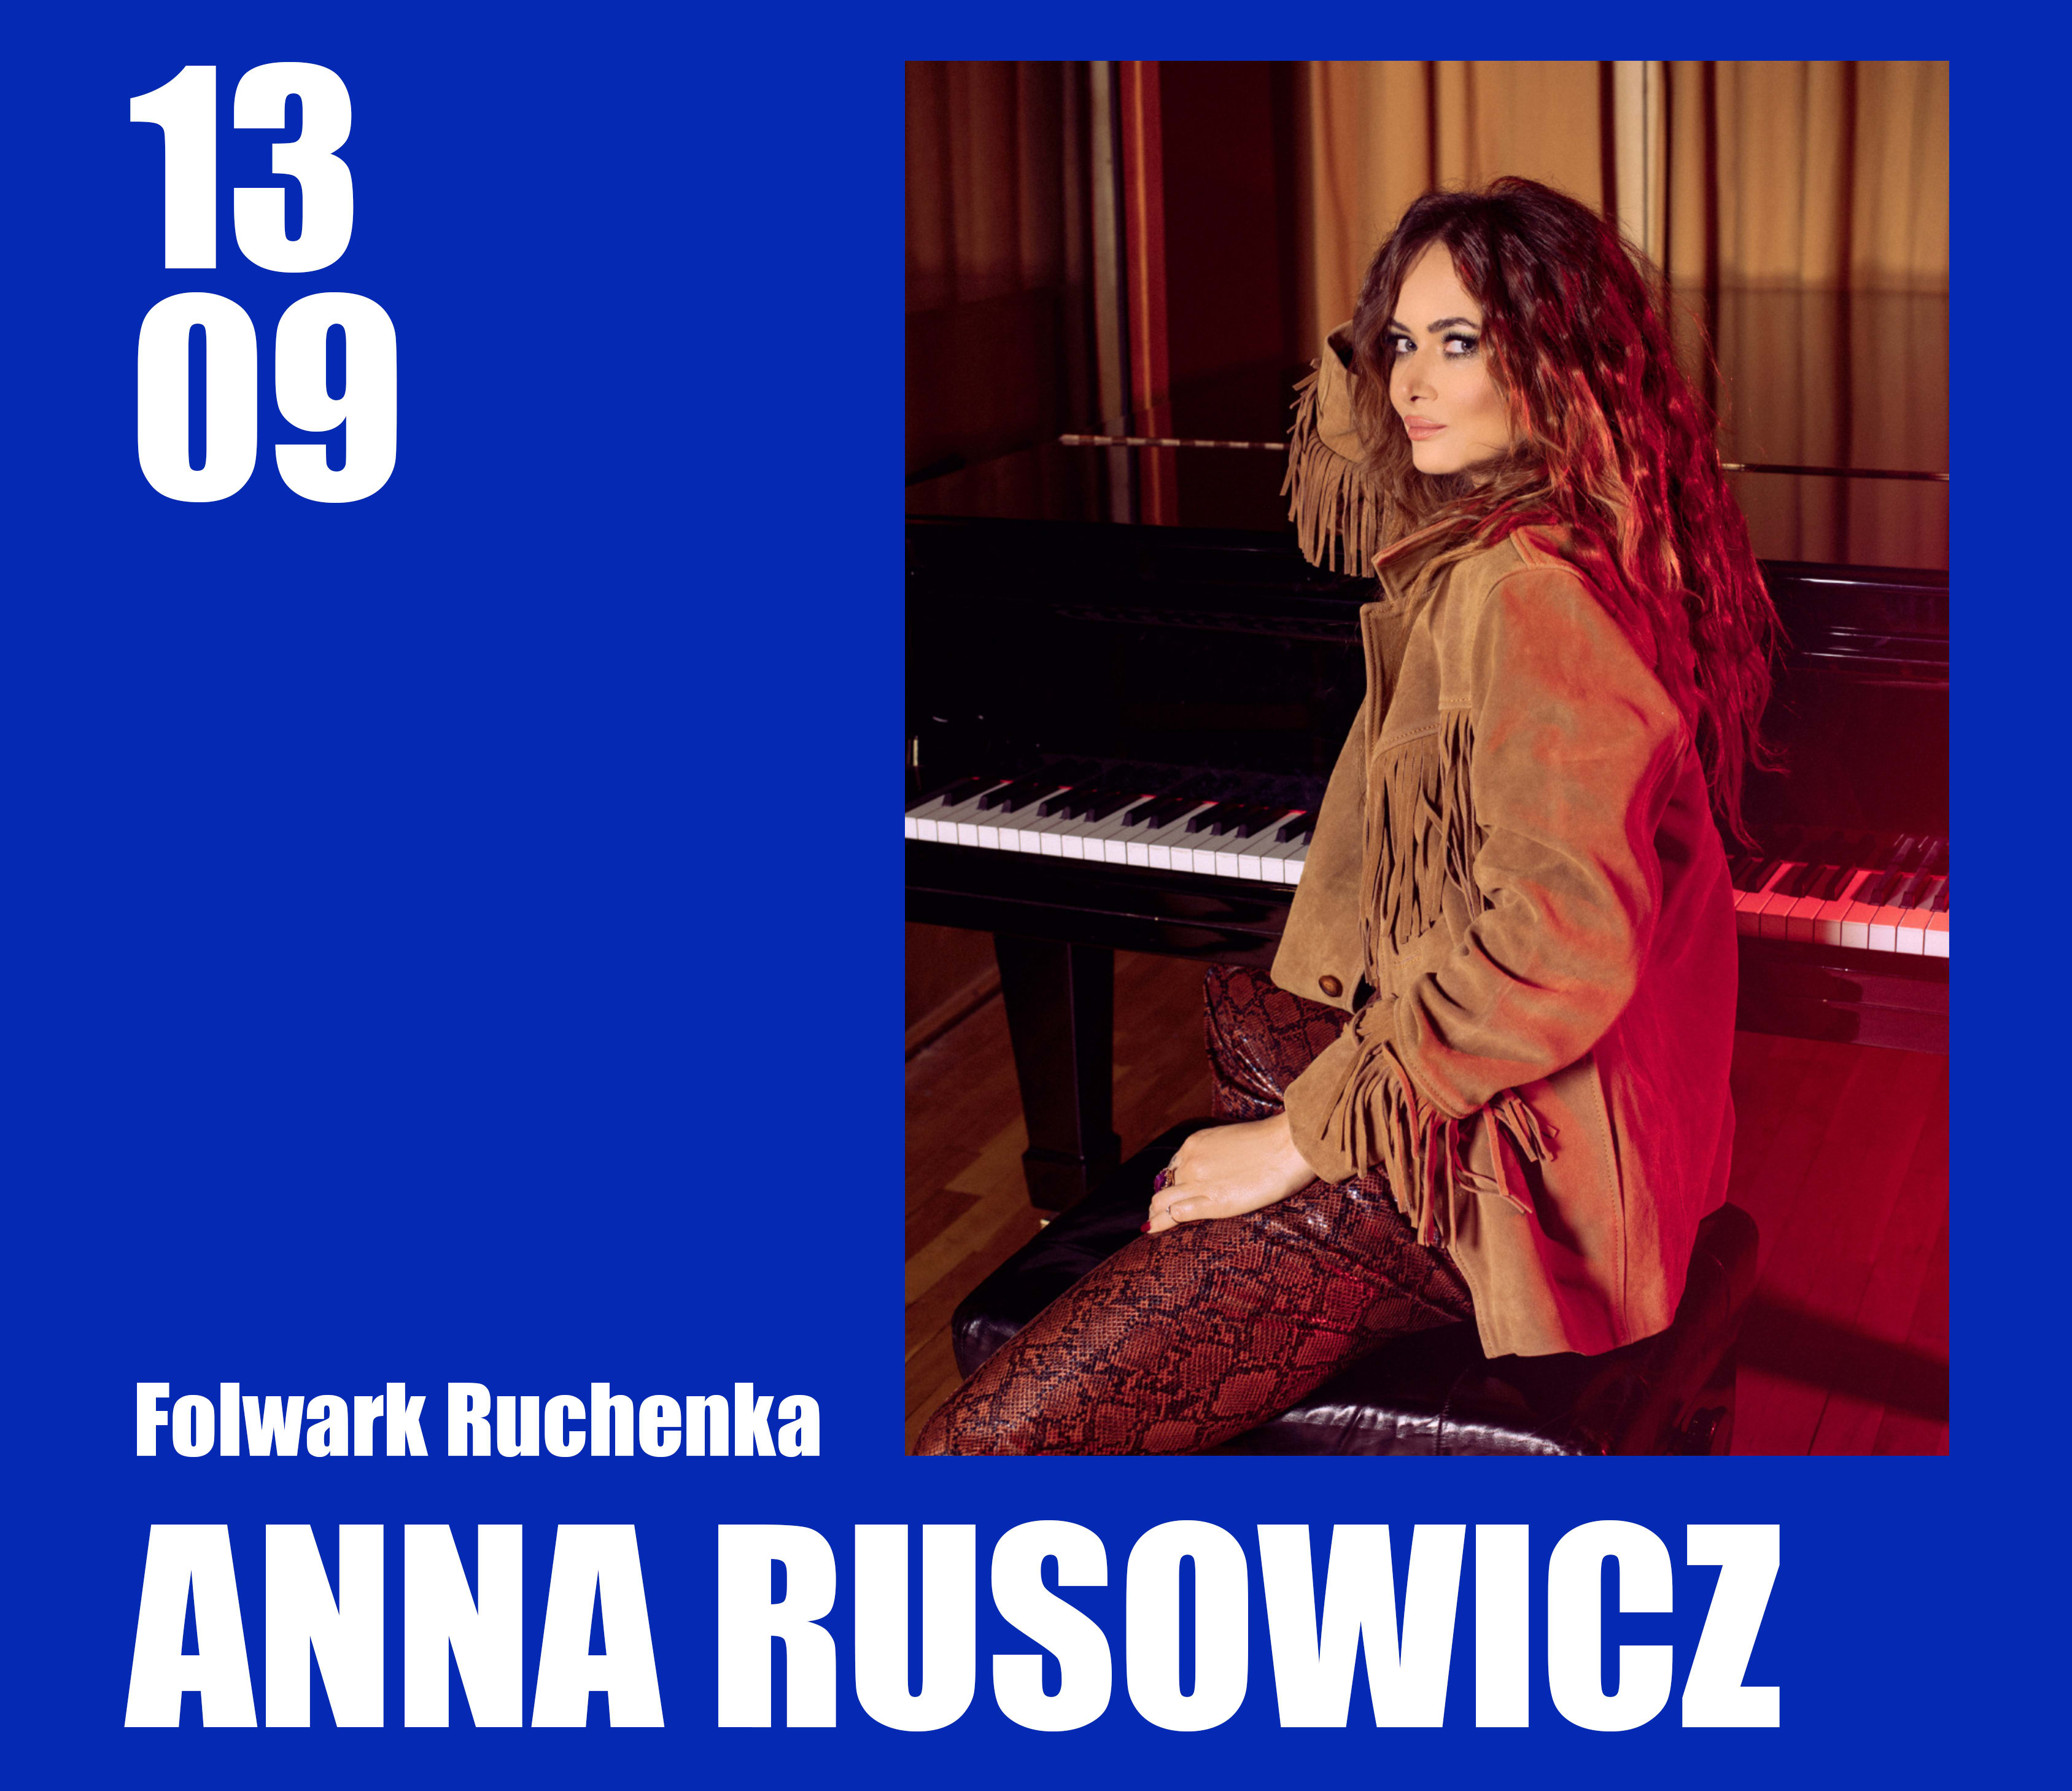 Going. | ANNA RUSOWICZ | Łąkowy koncert w Folwarku Ruchenka - Folwark Ruchenka